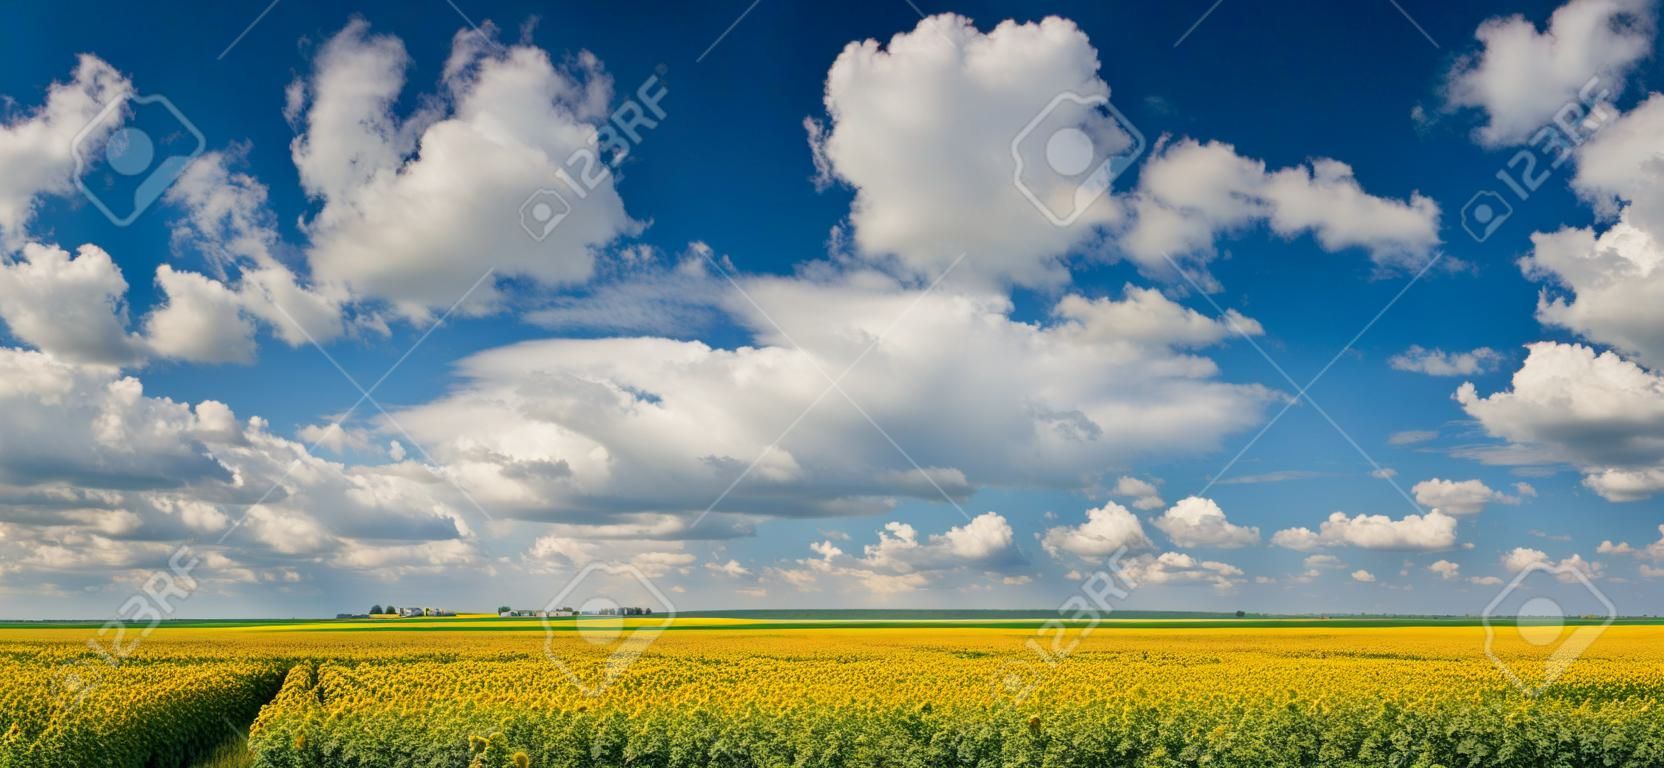 해바라기의 필드 위에 적 운 구름과 푸른 하늘